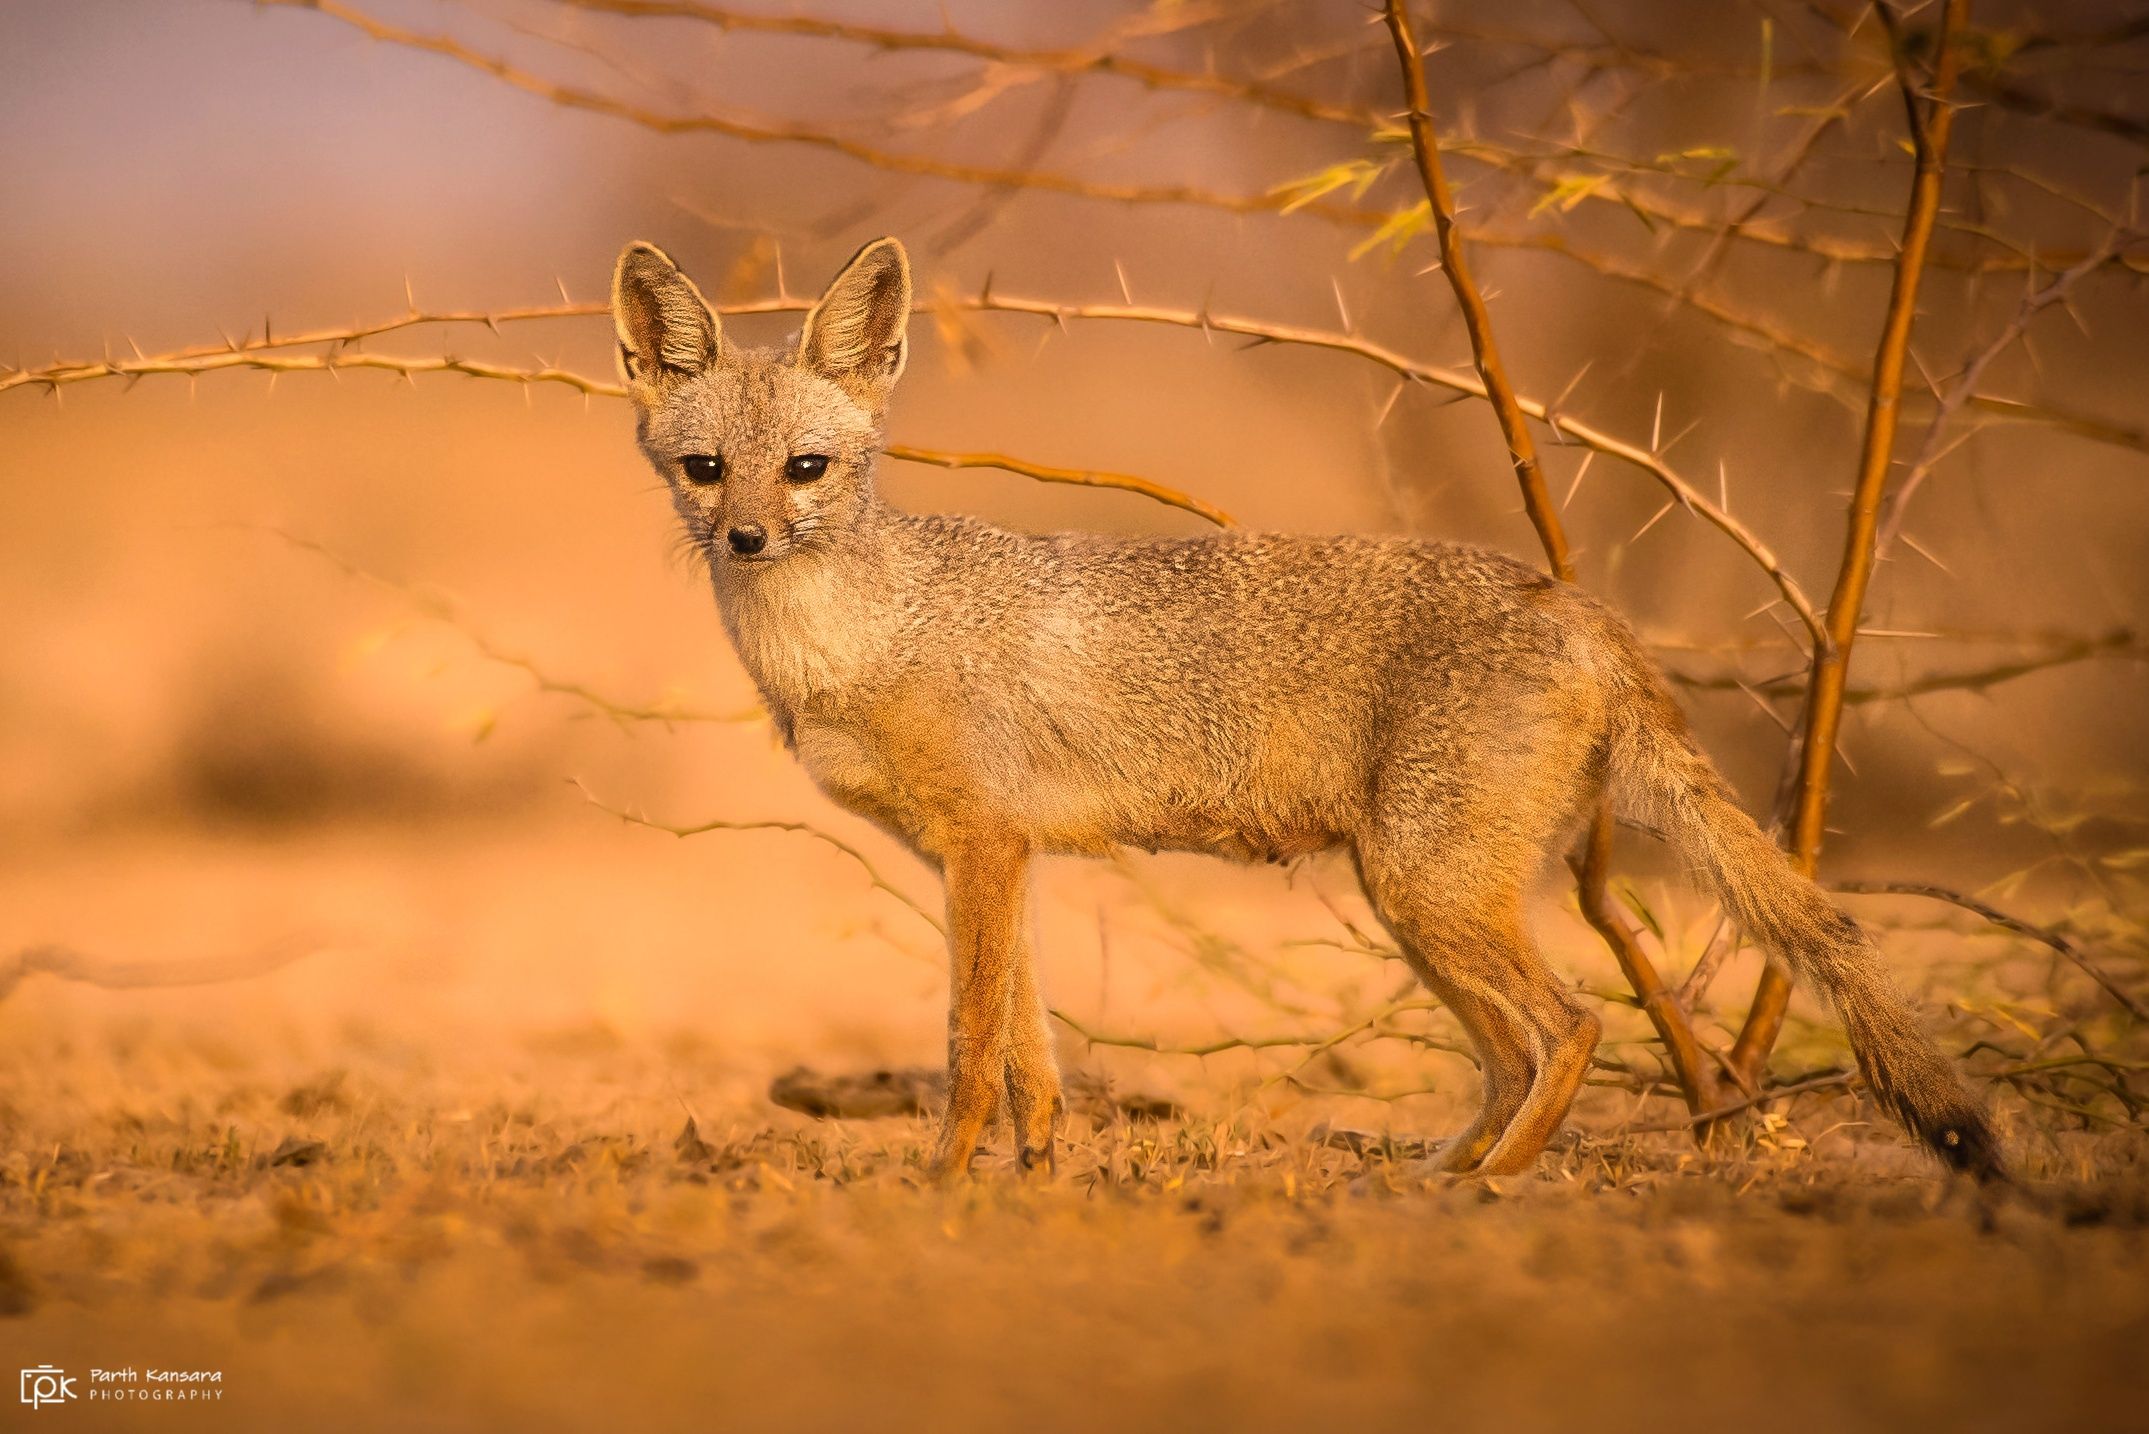 Indian Fox (Vulpes bengalensis). Photographer kansara parth